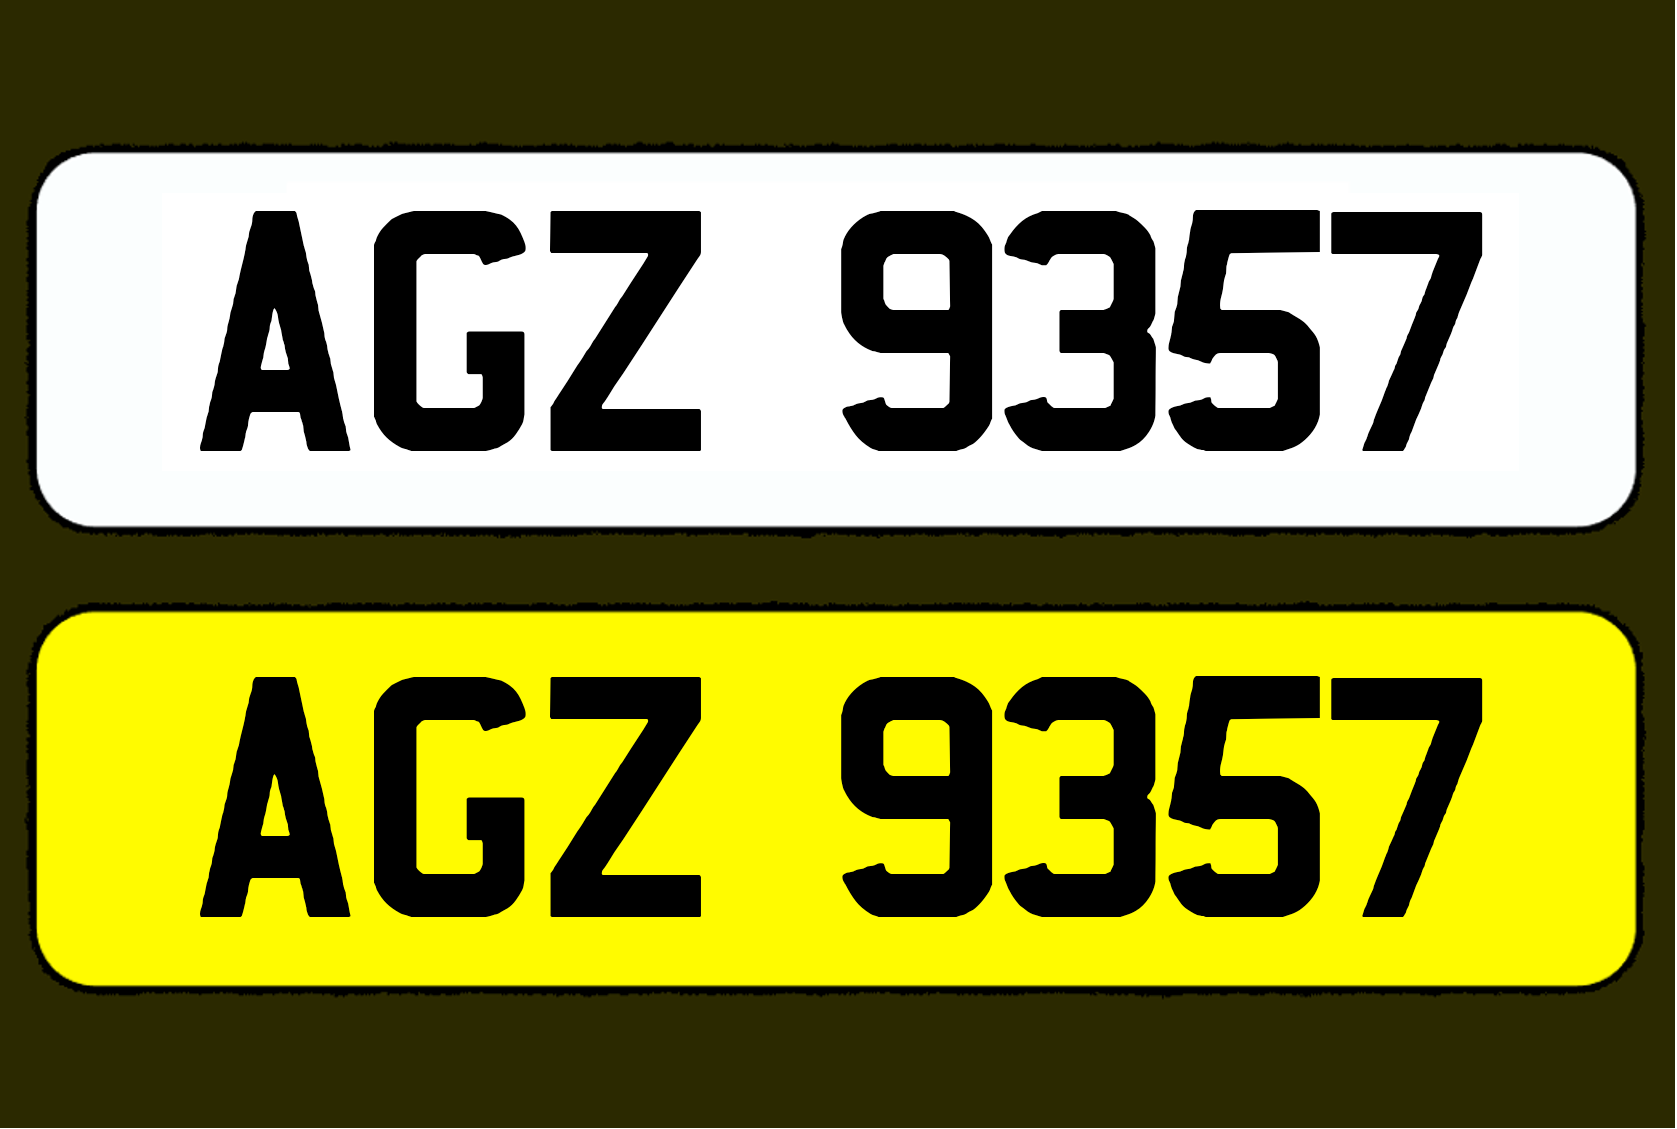 AGZ 9357